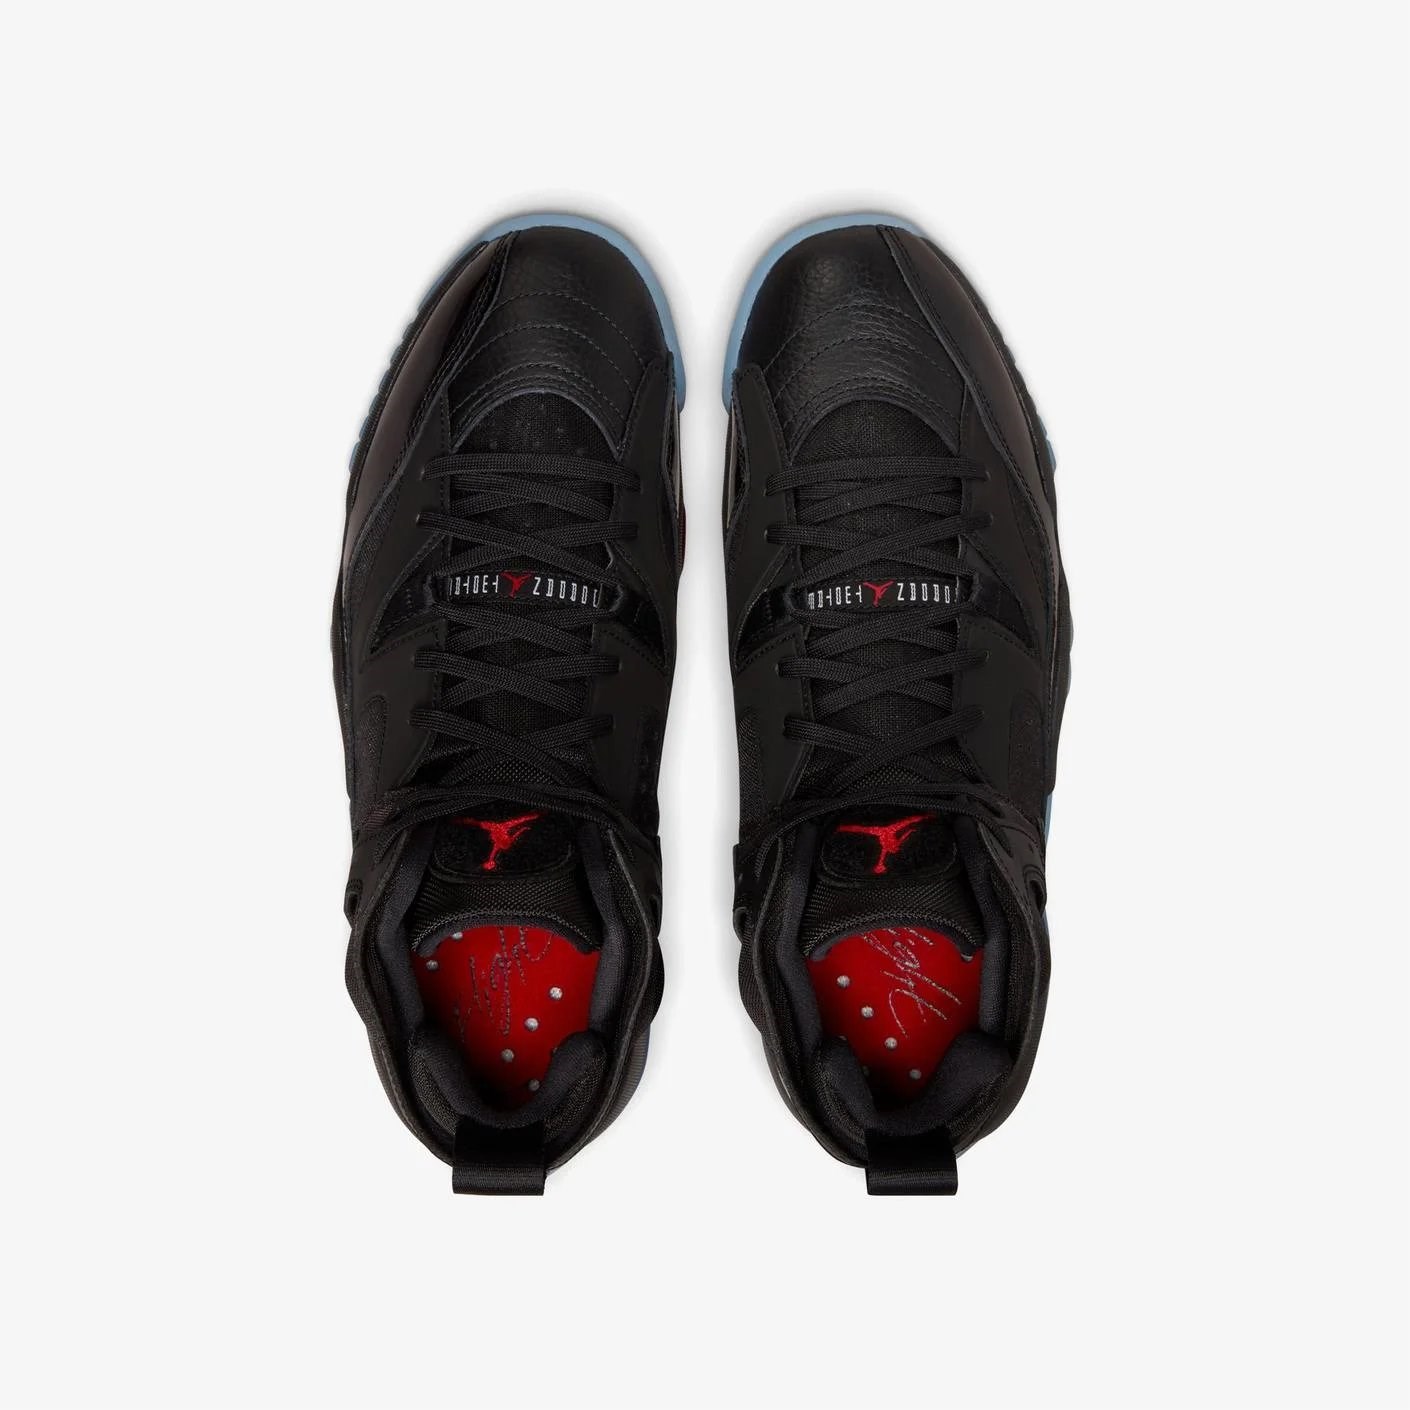 Nike Air Jordan Jumpman Two Trey  University Erkek Basketbol Ayakkabısı Black - University Red - Noir